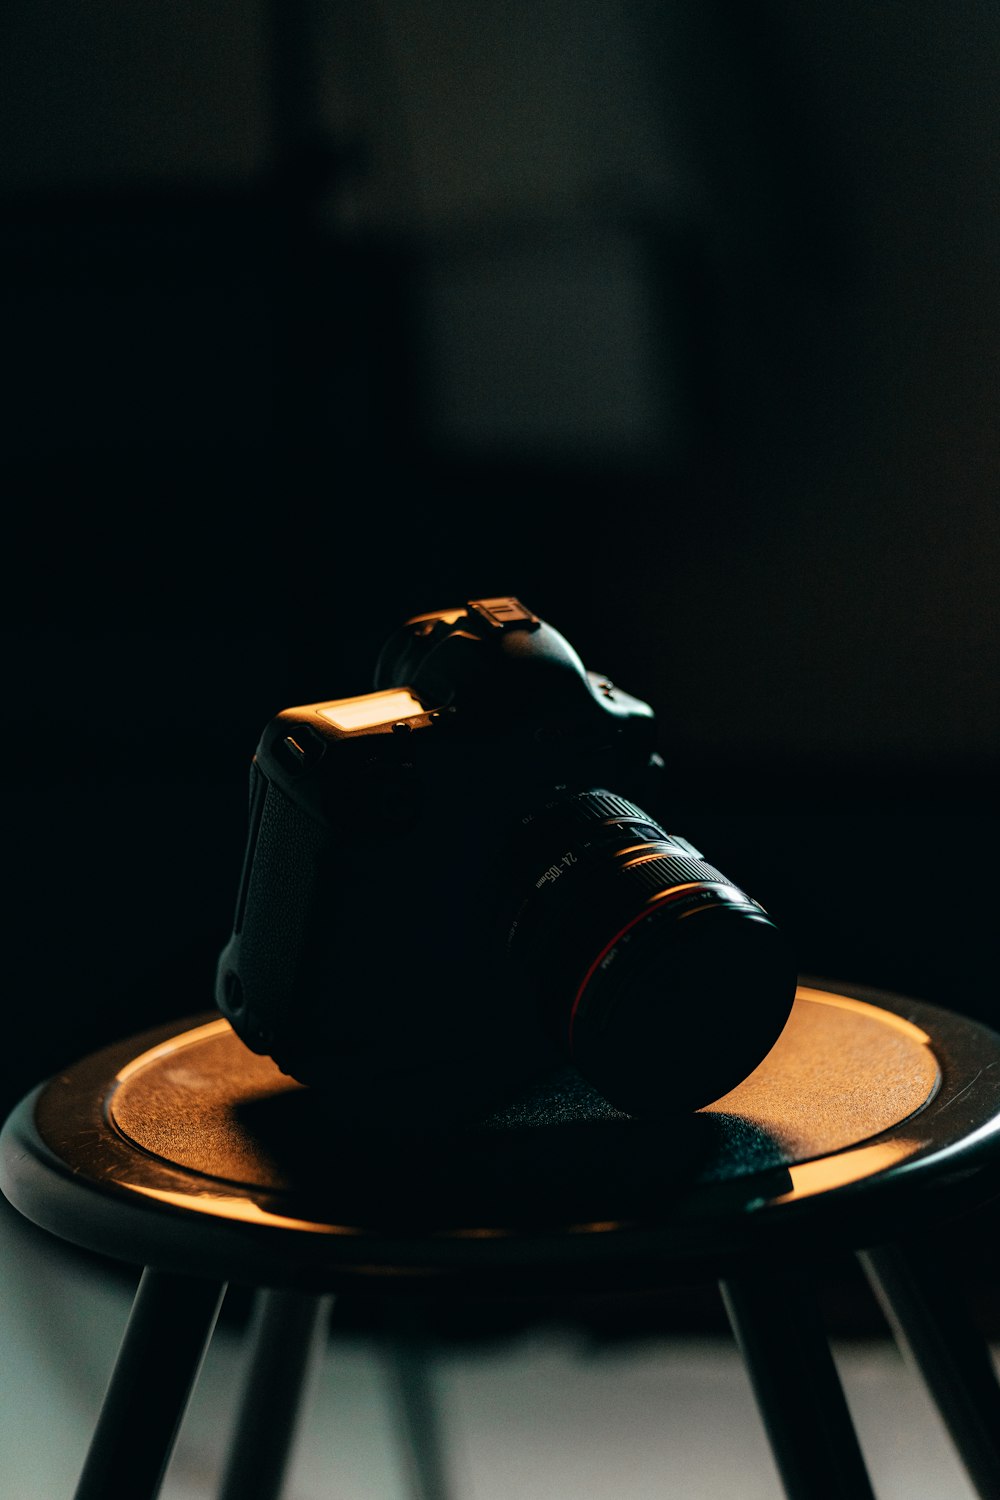 appareil photo reflex numérique noir sur table ronde marron